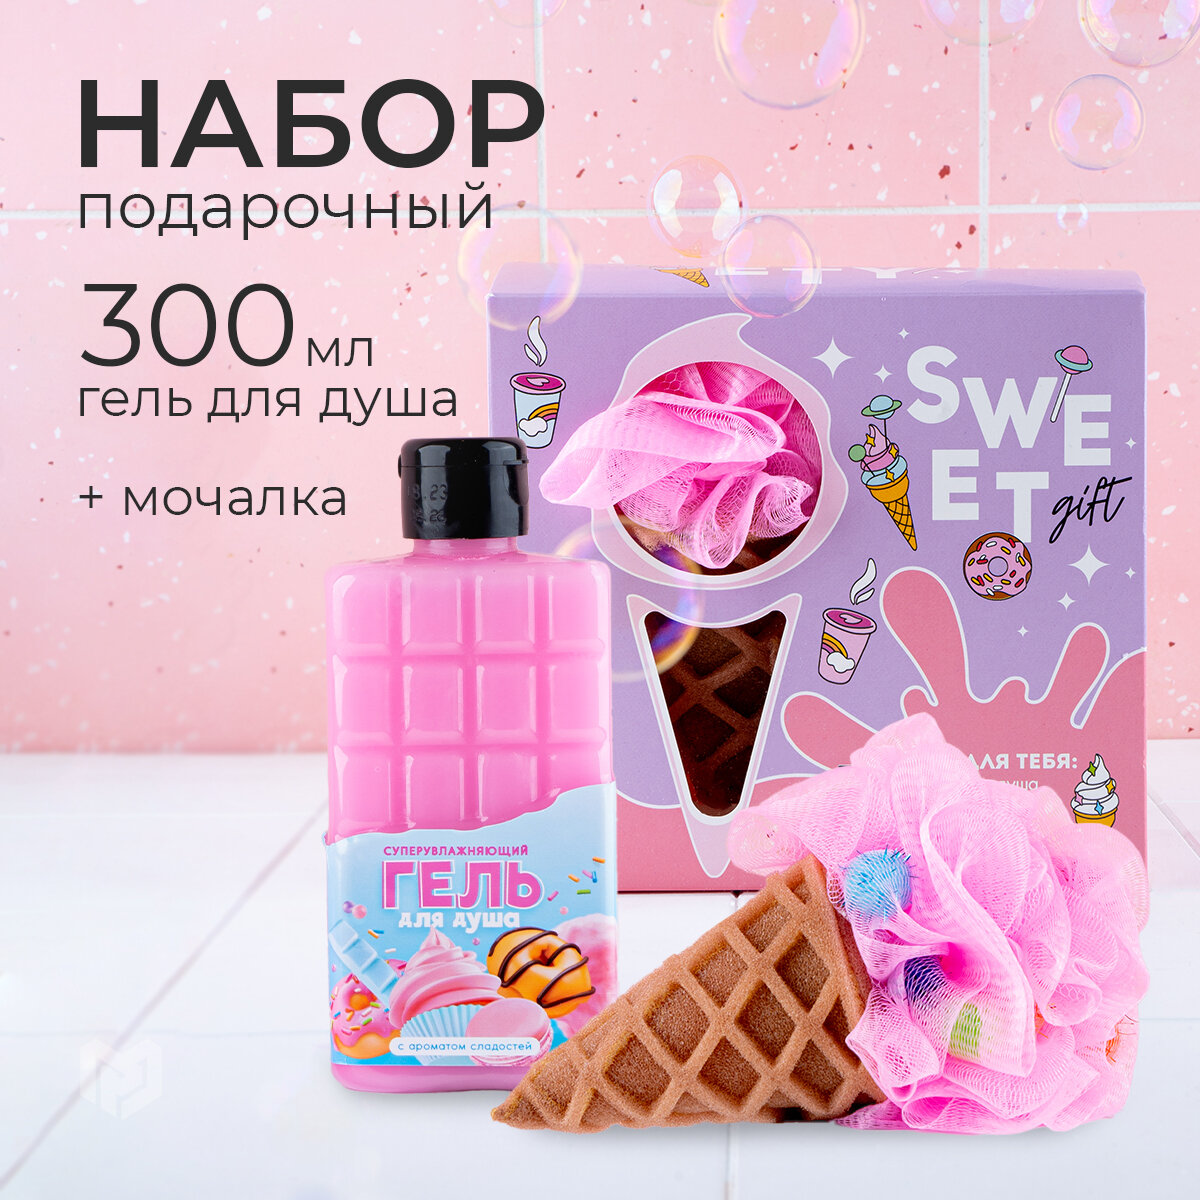 Подарочный набор женский "Для тебя", гель для душа в прикольном флаконе шоколад с ароматом сладостей, 300 мл и мочалка в форме мороженого